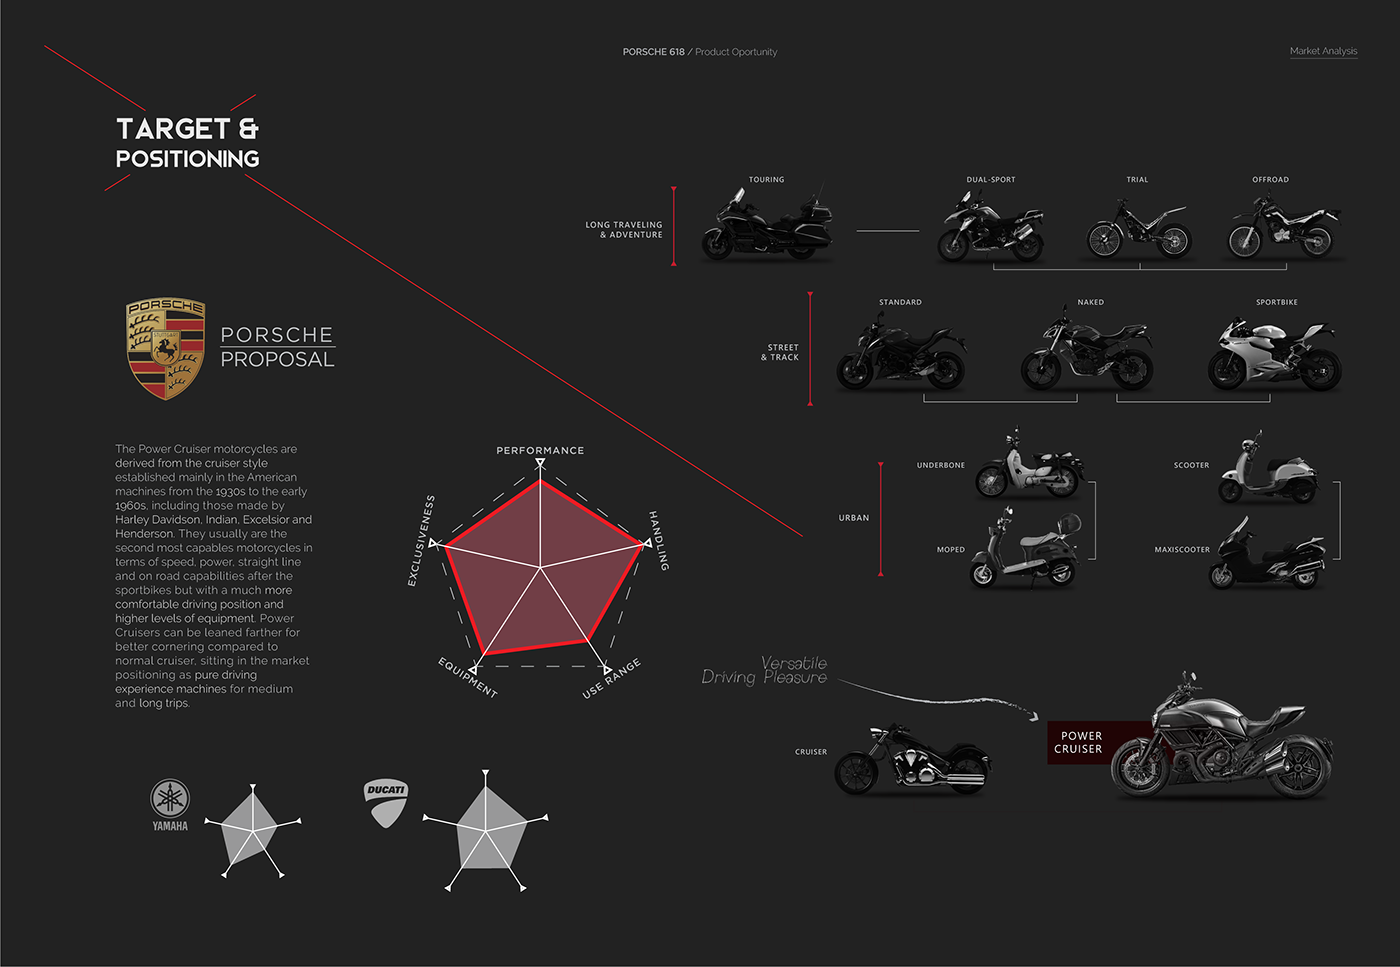 Porsche motorcycle concept electric le mans